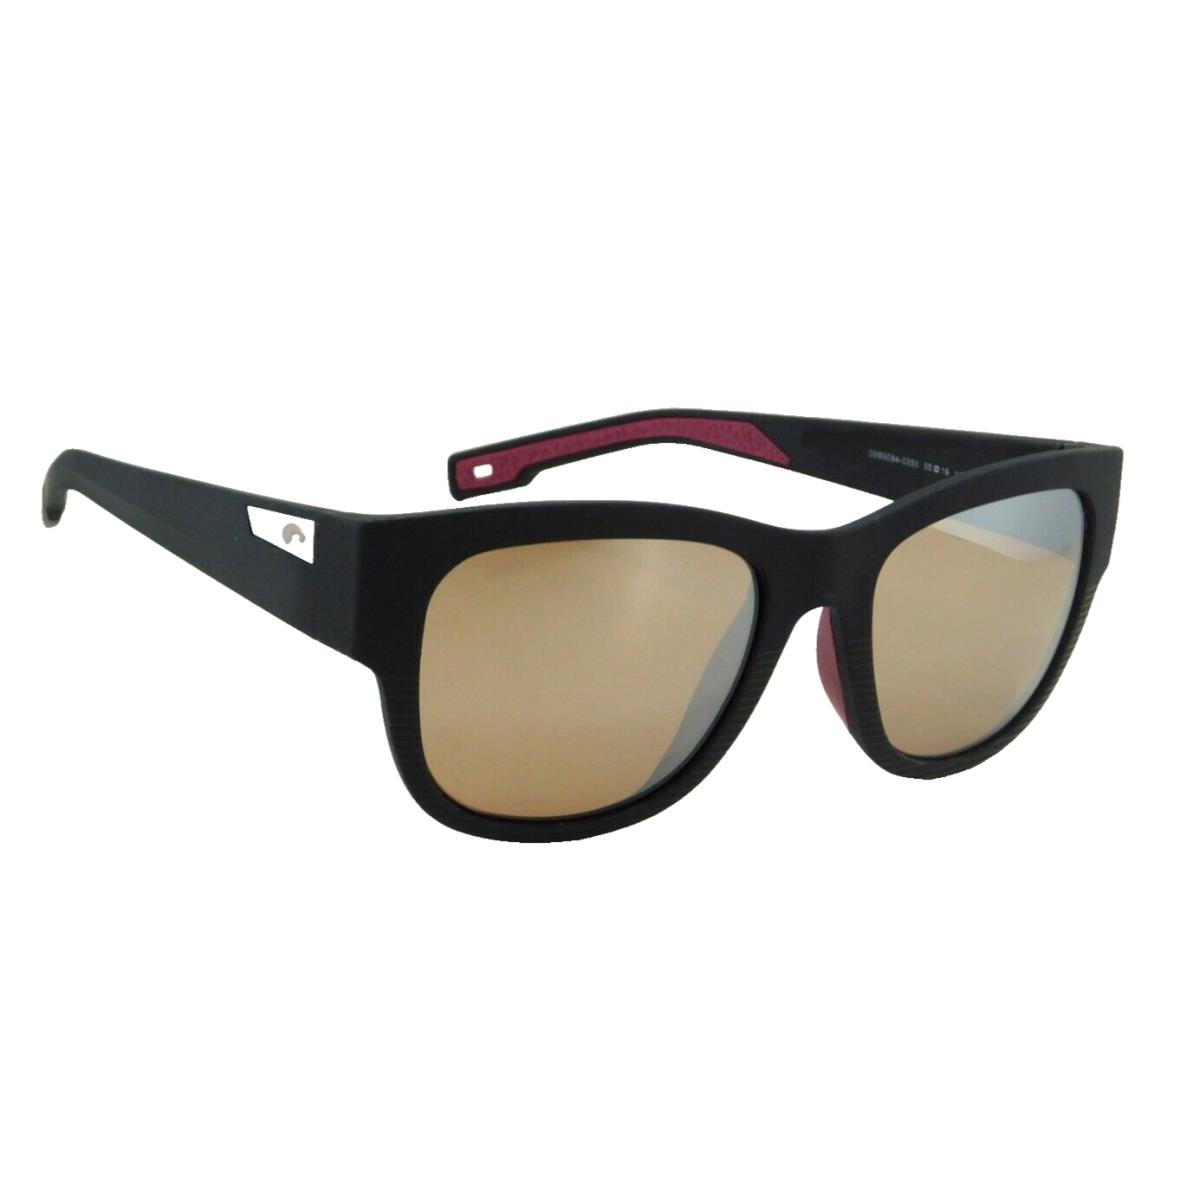 Costa Del Mar Caleta Polarized Sunglasses Net Black / 580G Silver Mirror Glass